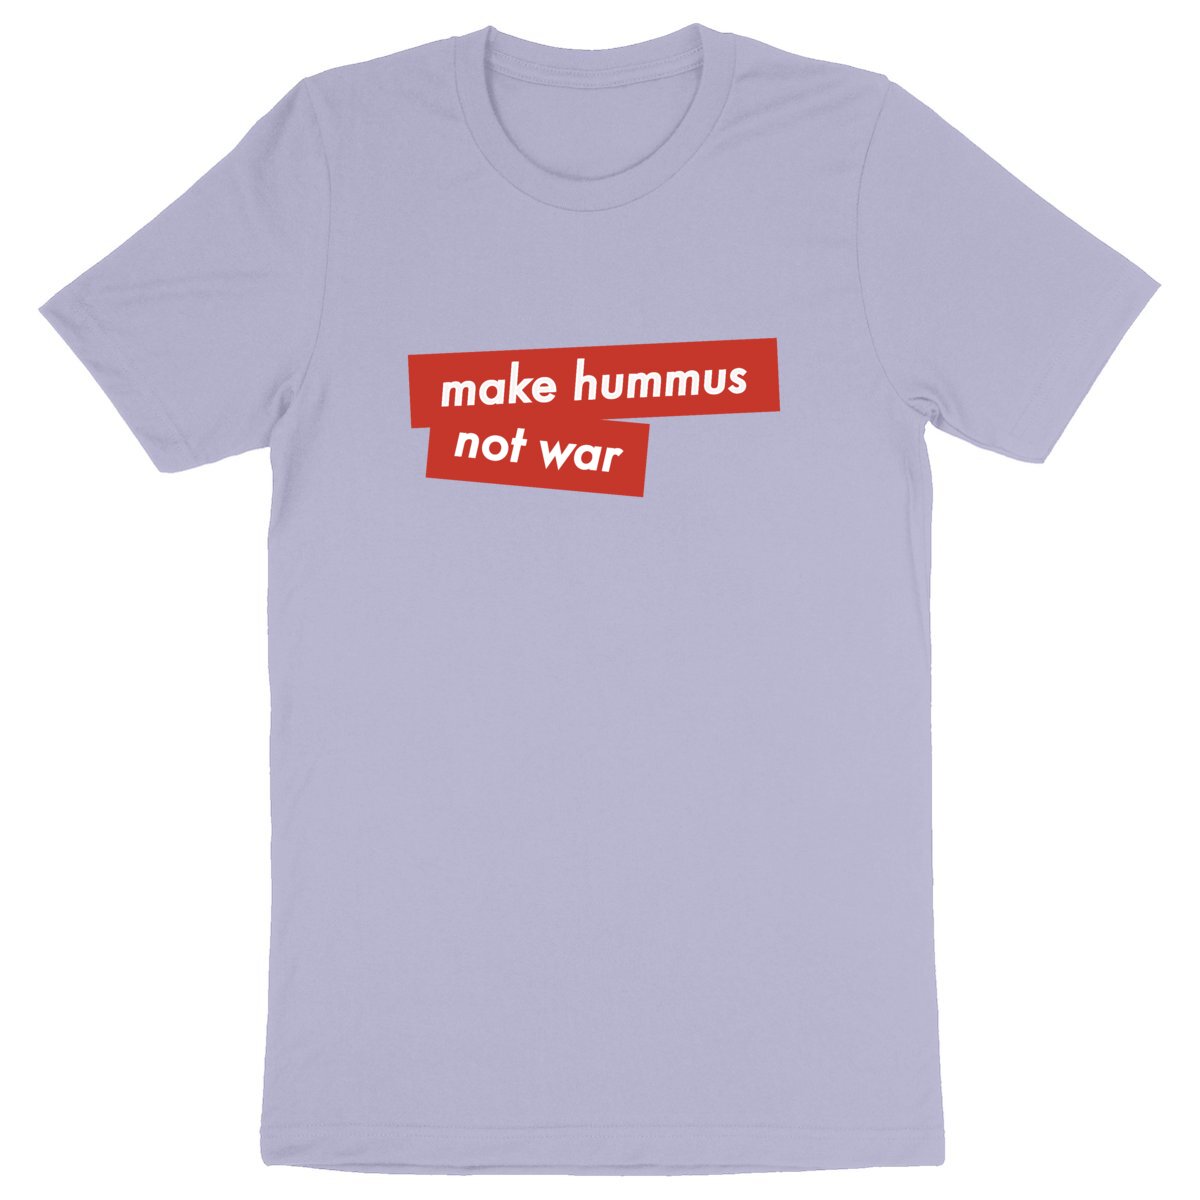 Make Hummus not War - Unisex Organic T-shirt